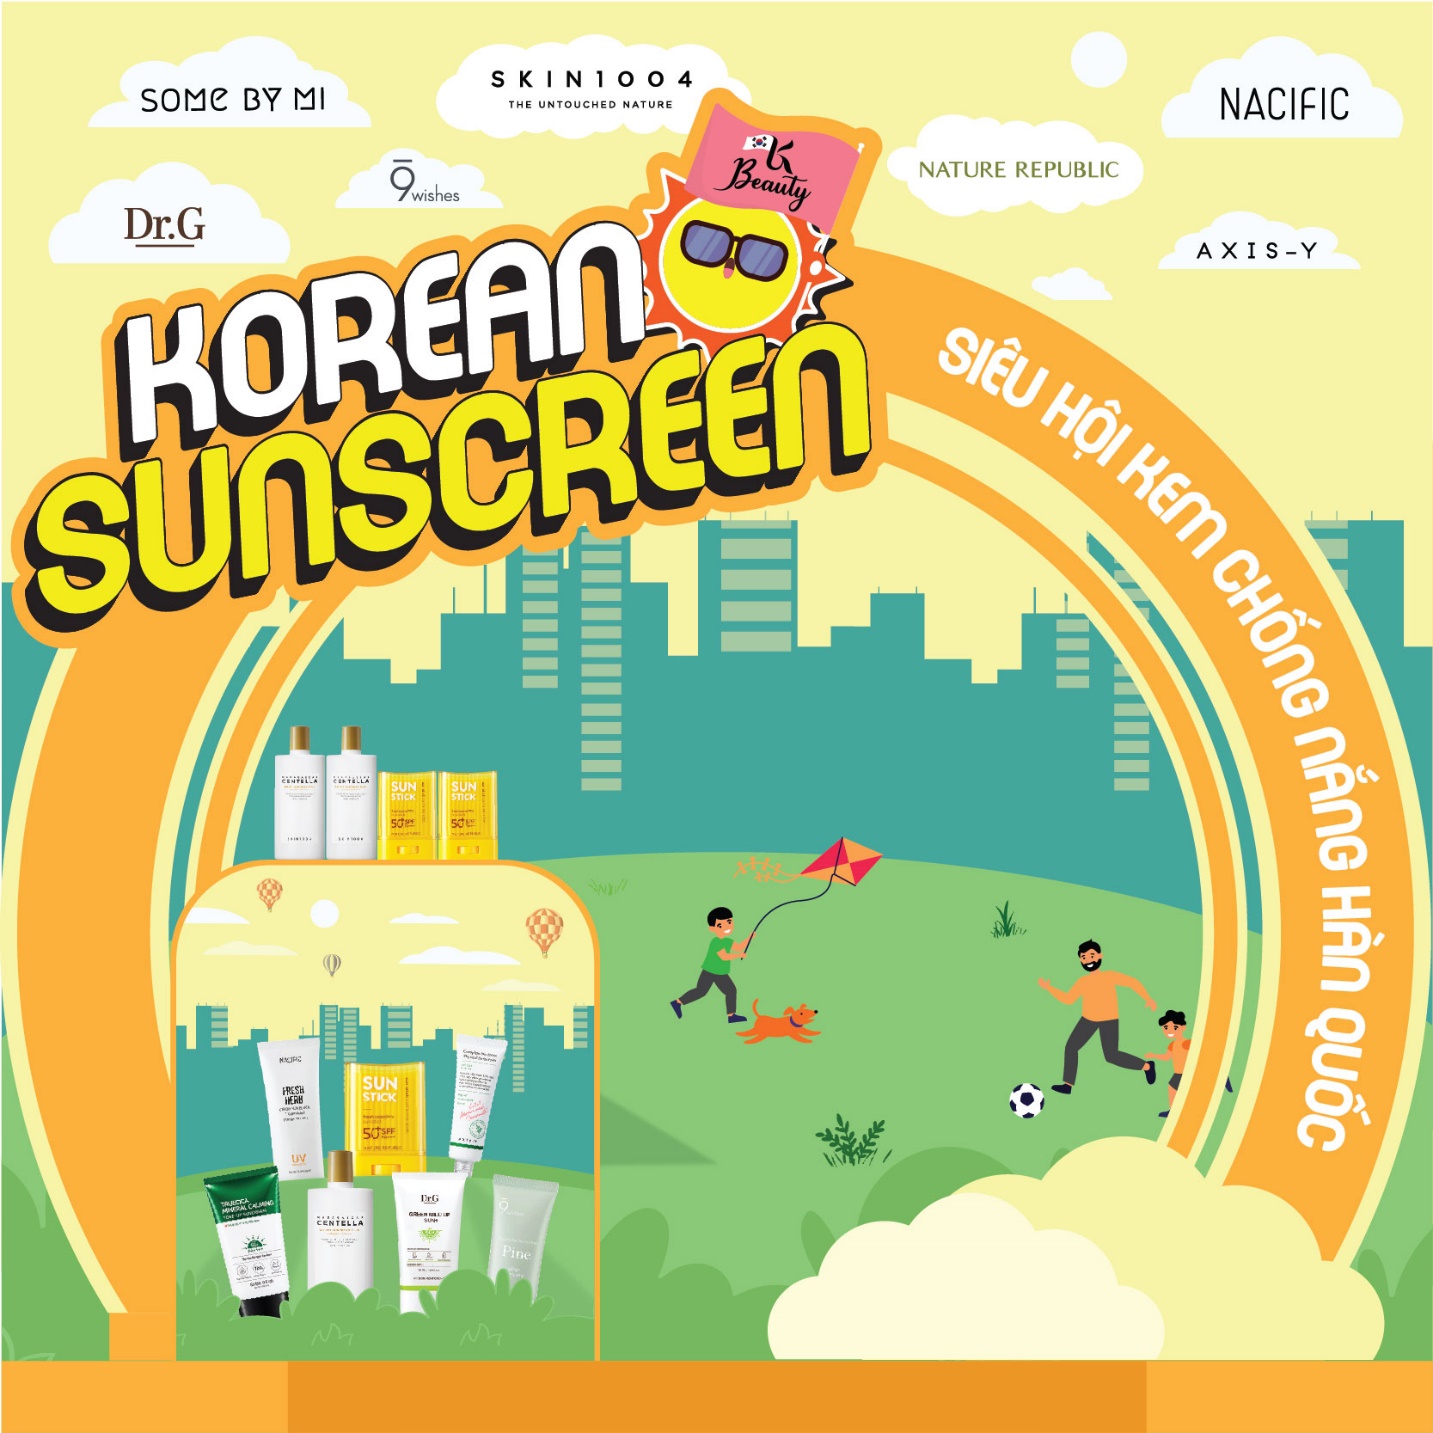 “Siêu hội chống nắng” siêu hot hè này với sự góp mặt của Juky San sắp diễn ra tại Aeon Mall Tân Phú ngày 2 - 3/7 - Ảnh 1.